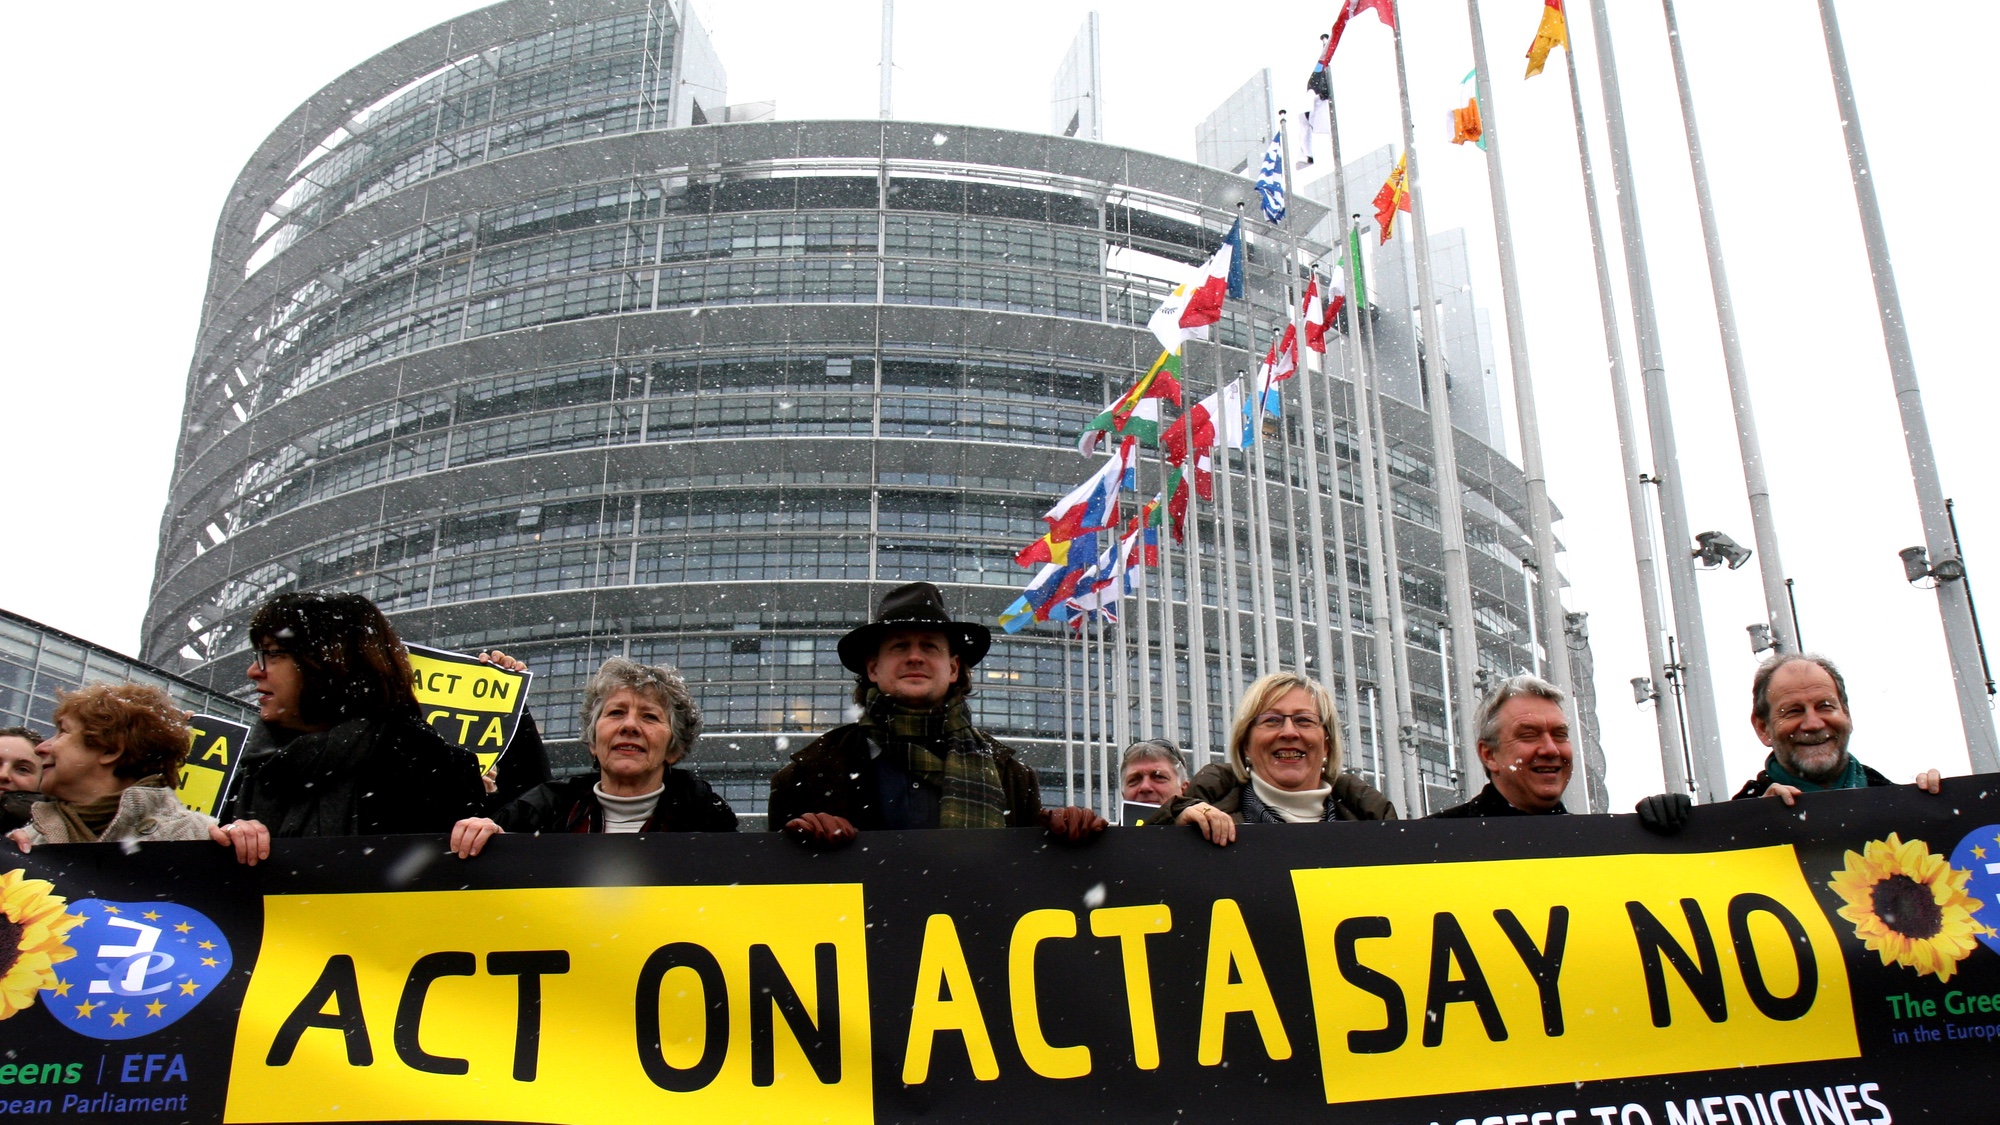 Foto: Kundgebung gegen ACTA vor dem Europäischen Parlament in Strassburg